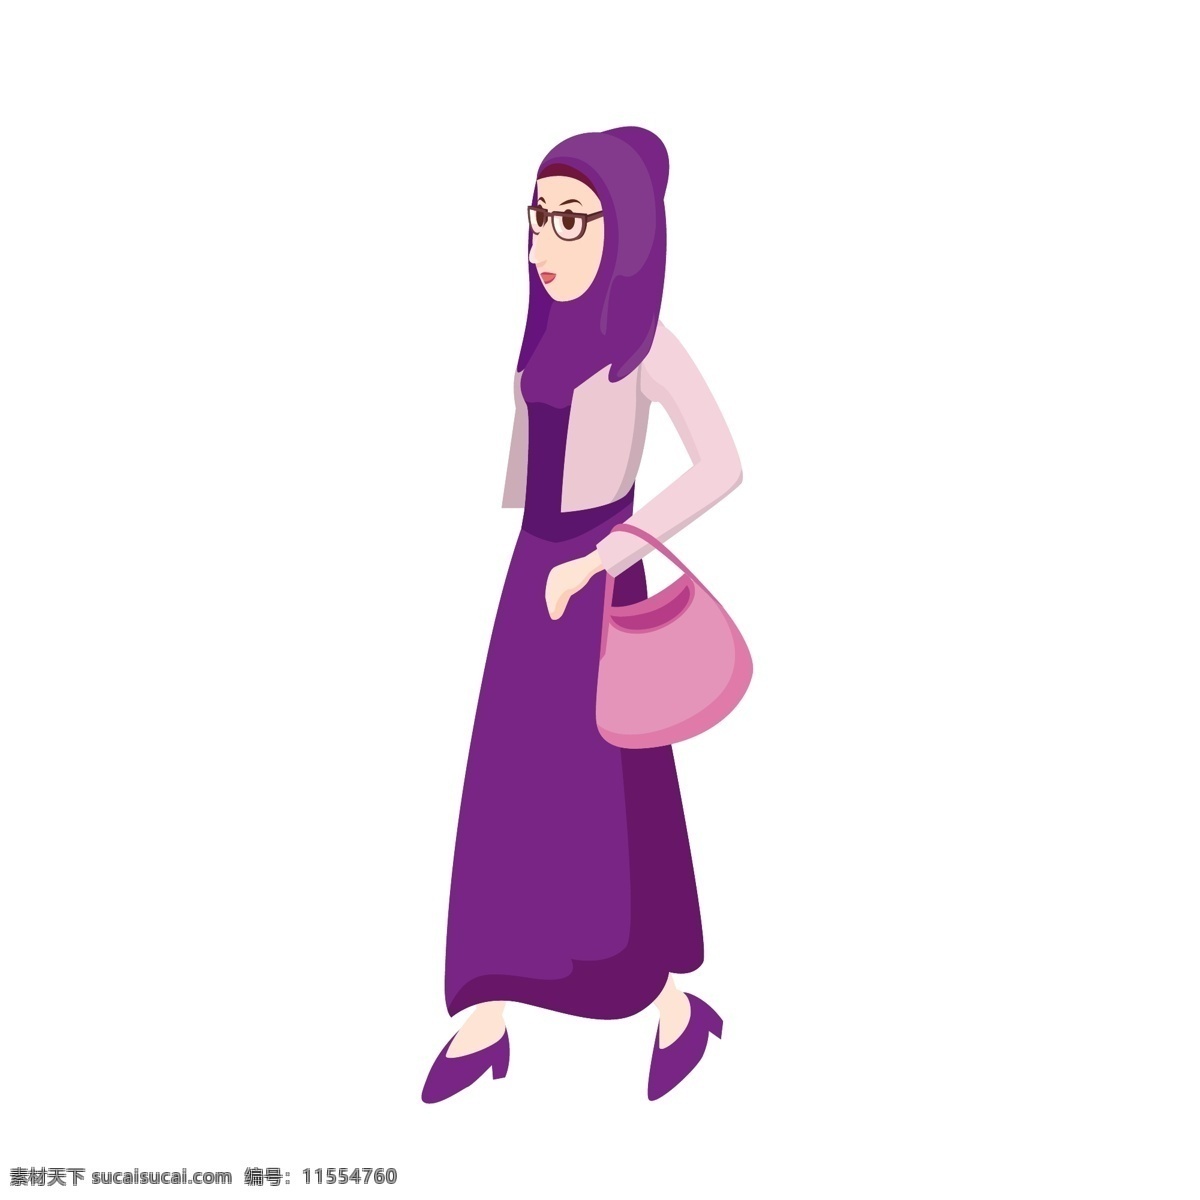 披 头巾 女人 矢量 卡通 卡通女人 披着头巾 头巾女人 卡通的女人 拎包 拎包的女人 紫色 紫色着装